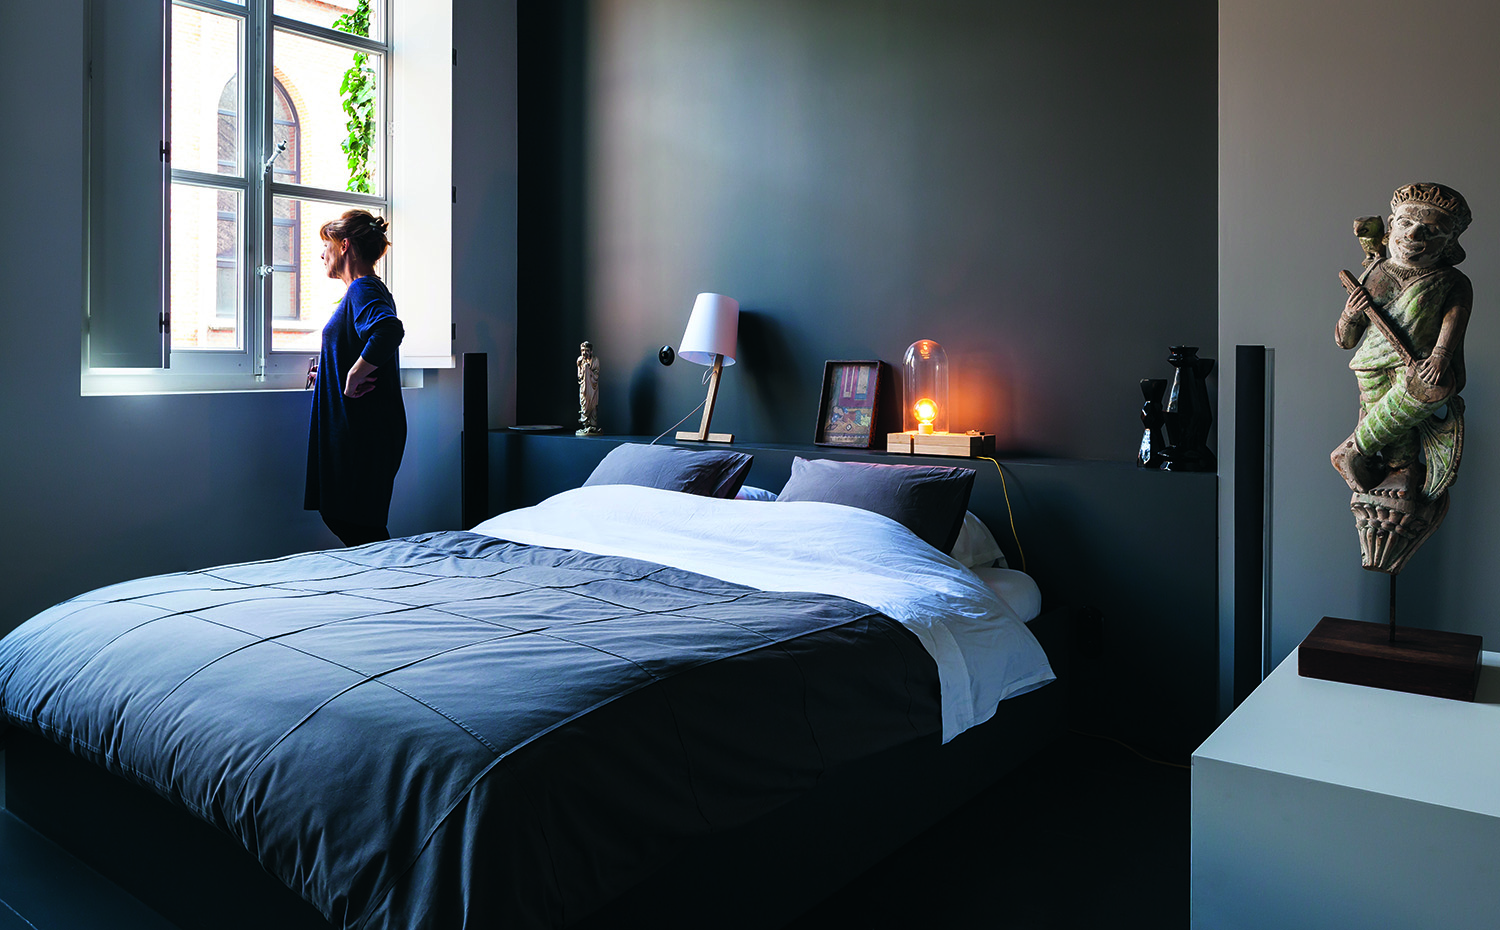 VTR515. El color azul es otra buena opción para el dormitorio, porque aporta sensación de calma y representa la seguridad interior